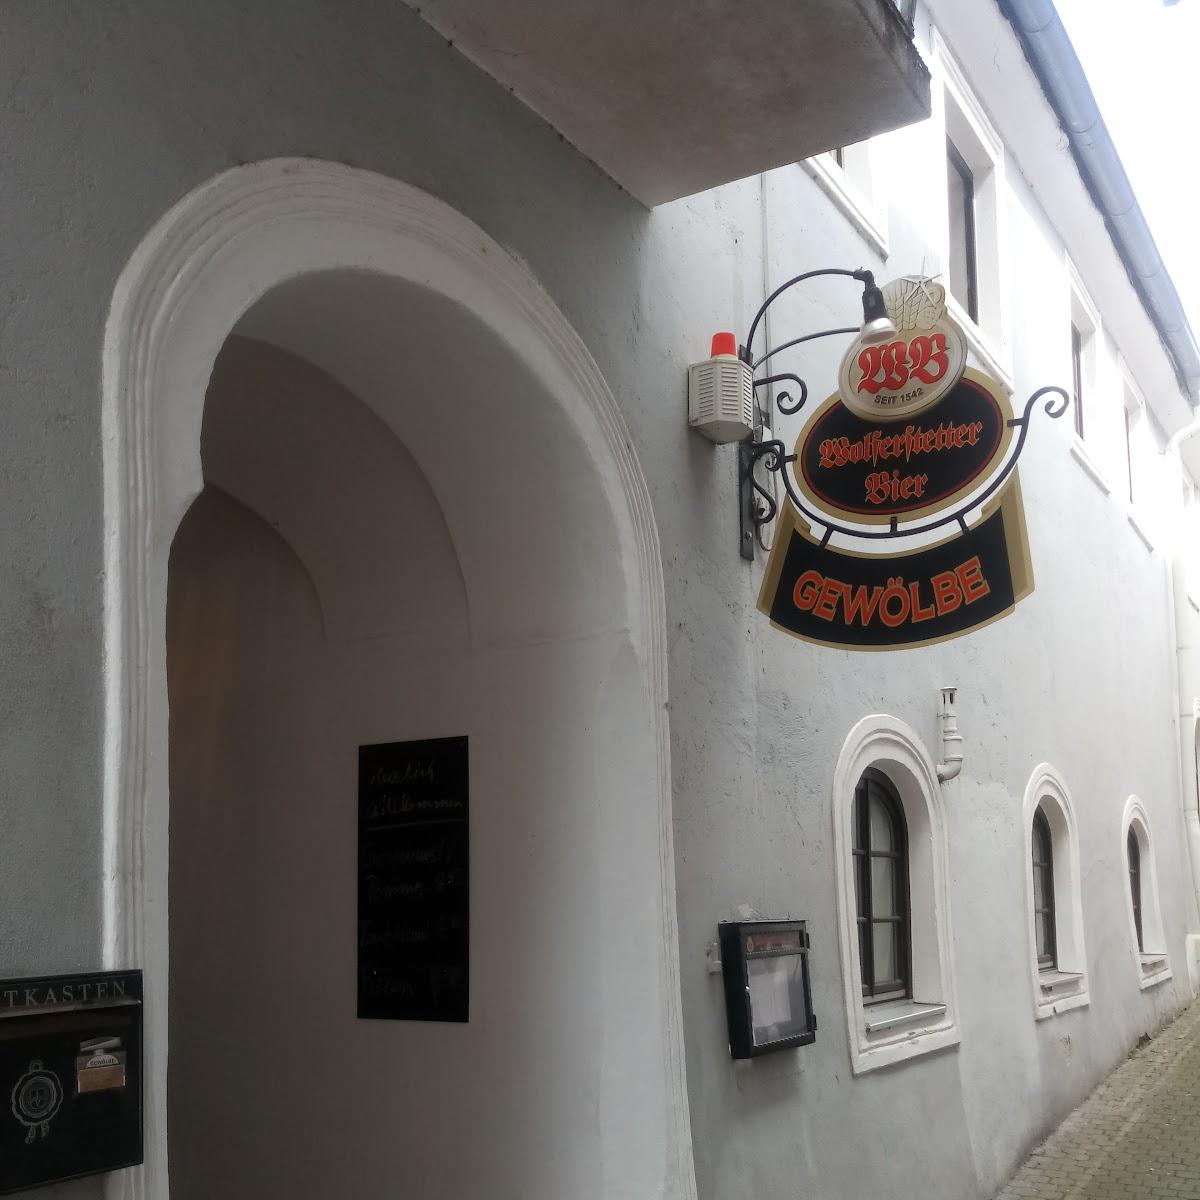 Restaurant "Pilspub   Gewölbe  und Biergarten am Marktplatz" in Ortenburg